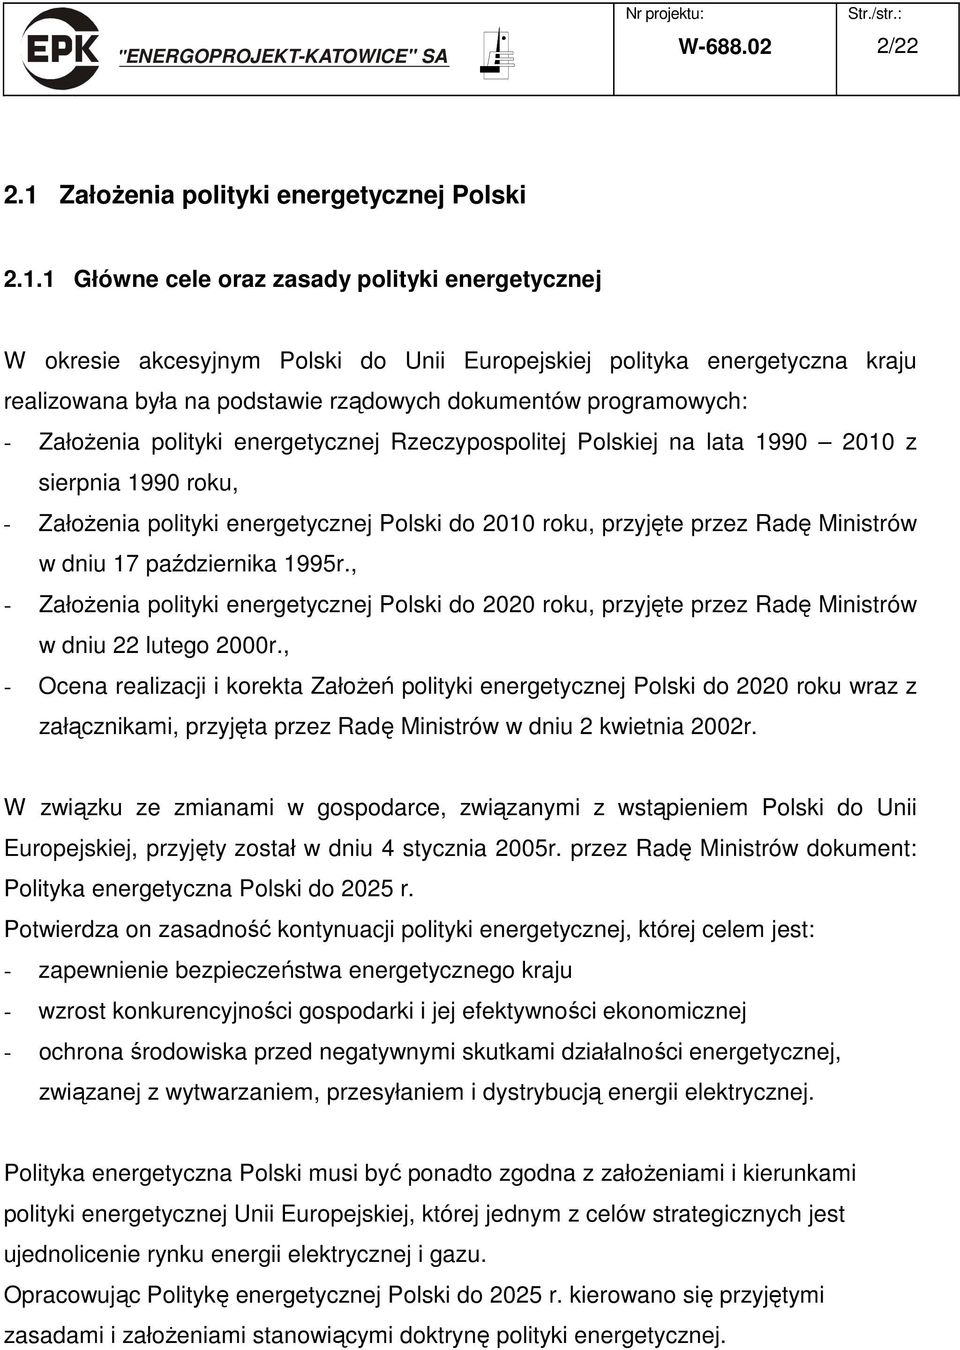 1 Główne cele oraz zasady polityki energetycznej W okresie akcesyjnym Polski do Unii Europejskiej polityka energetyczna kraju realizowana była na podstawie rządowych dokumentów programowych: -